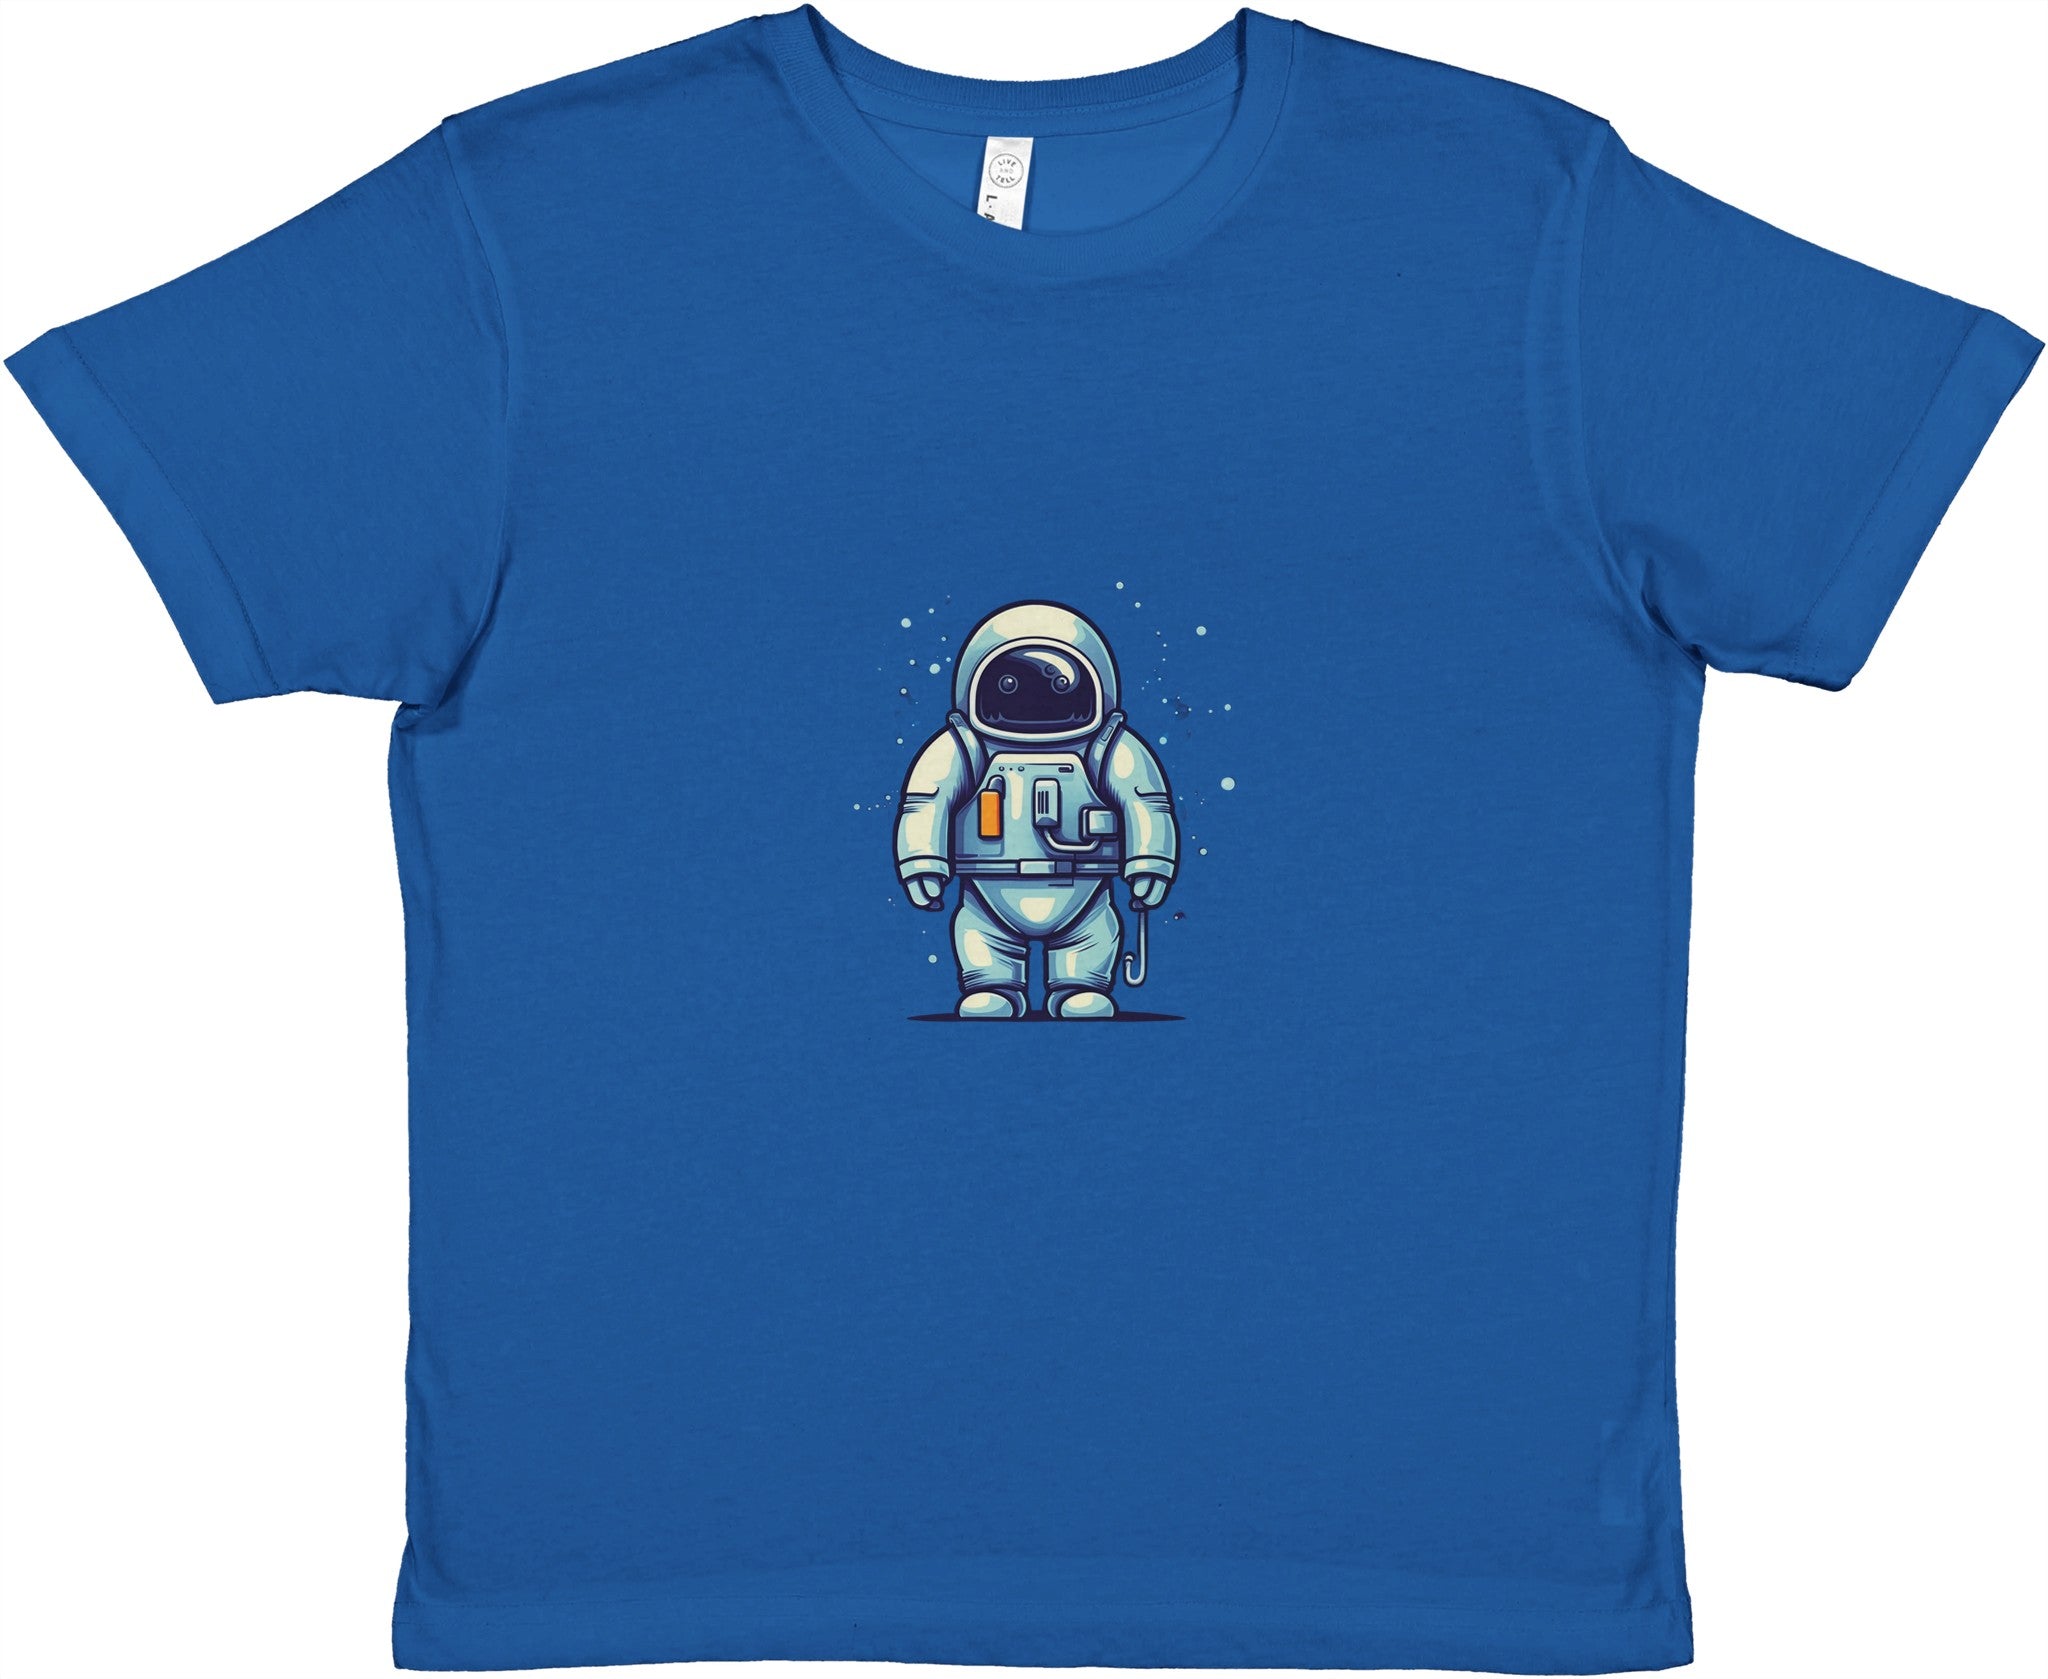 Cosmic Explorer Kids Crewneck T-shirt - Optimalprint